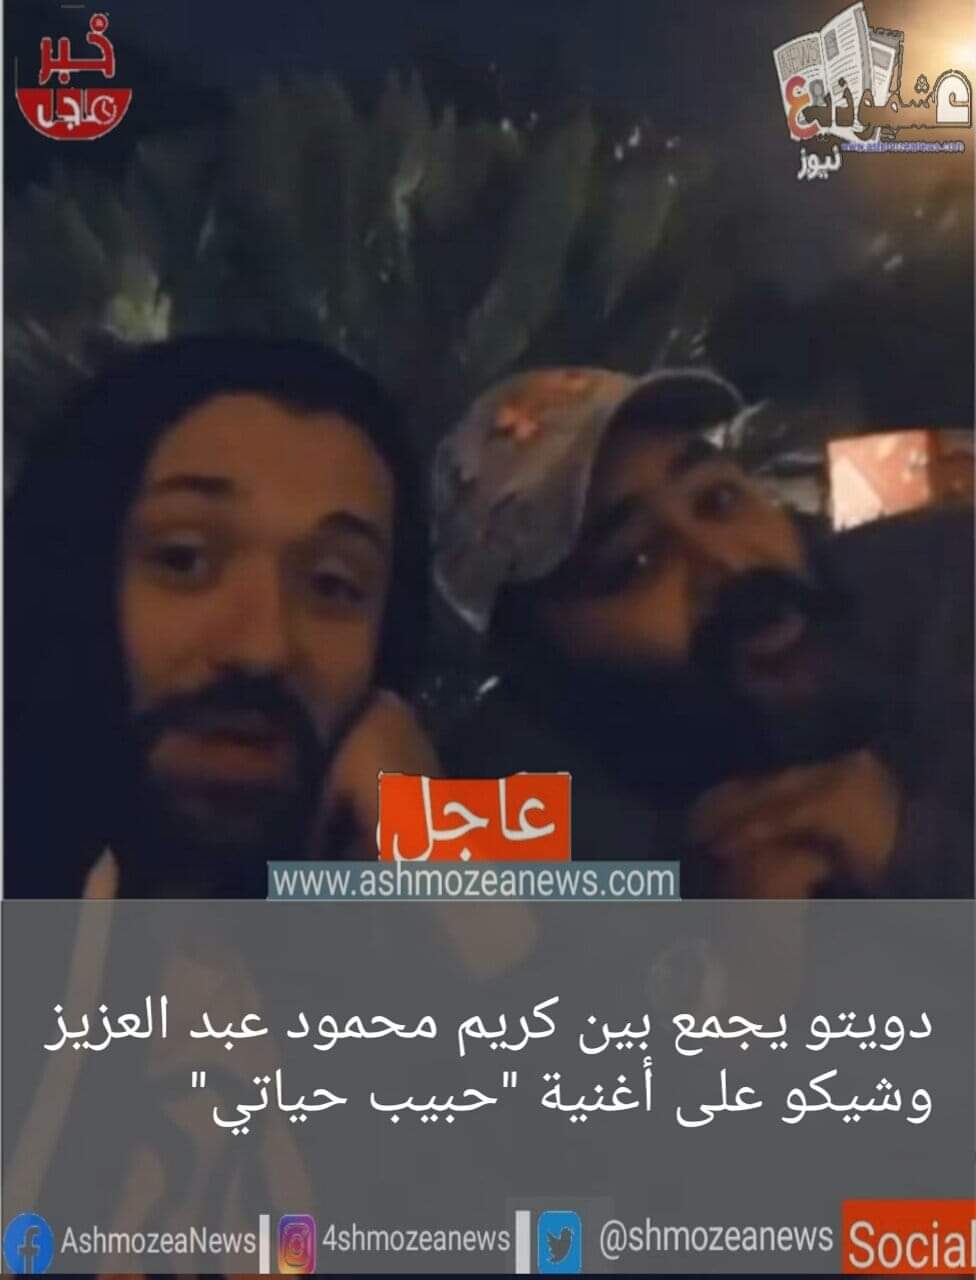 دويتو يجمع بين كريم محمود عبد العزيز وشيكو على أغنية "حبيب حياتي"